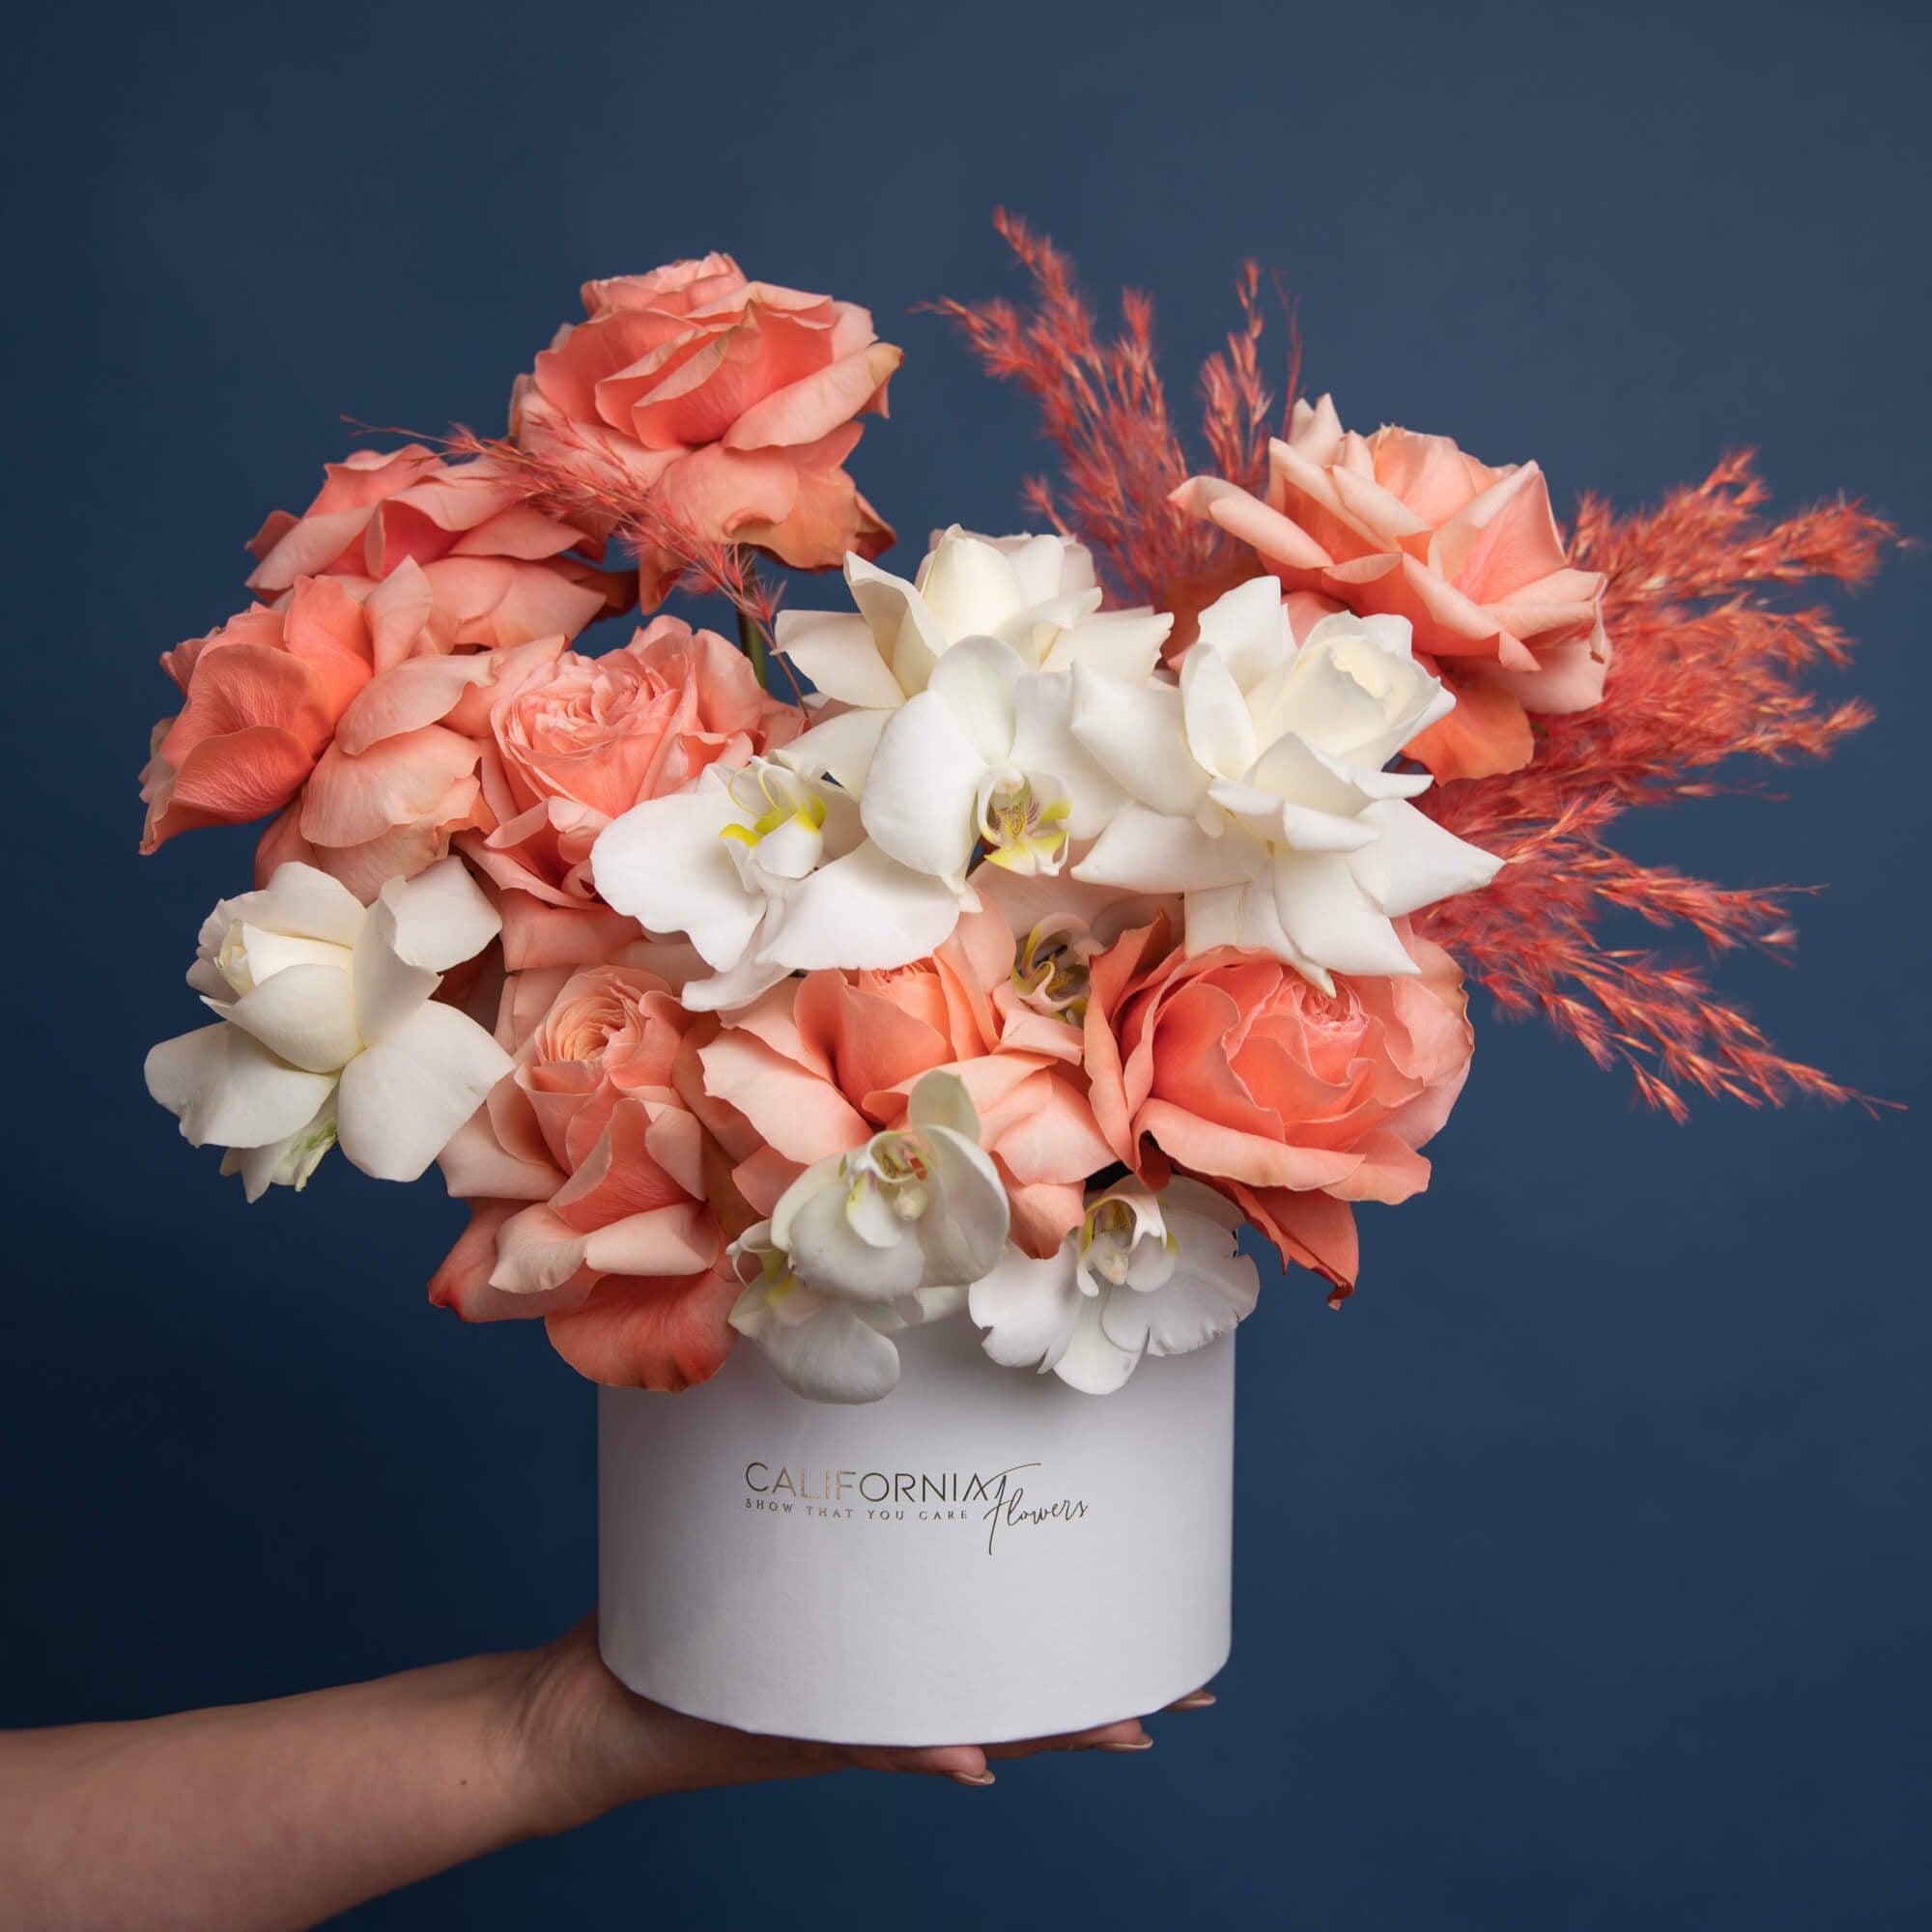 Aranjament floral in cutie cu trandafiri si phalaenopsis alb, 2